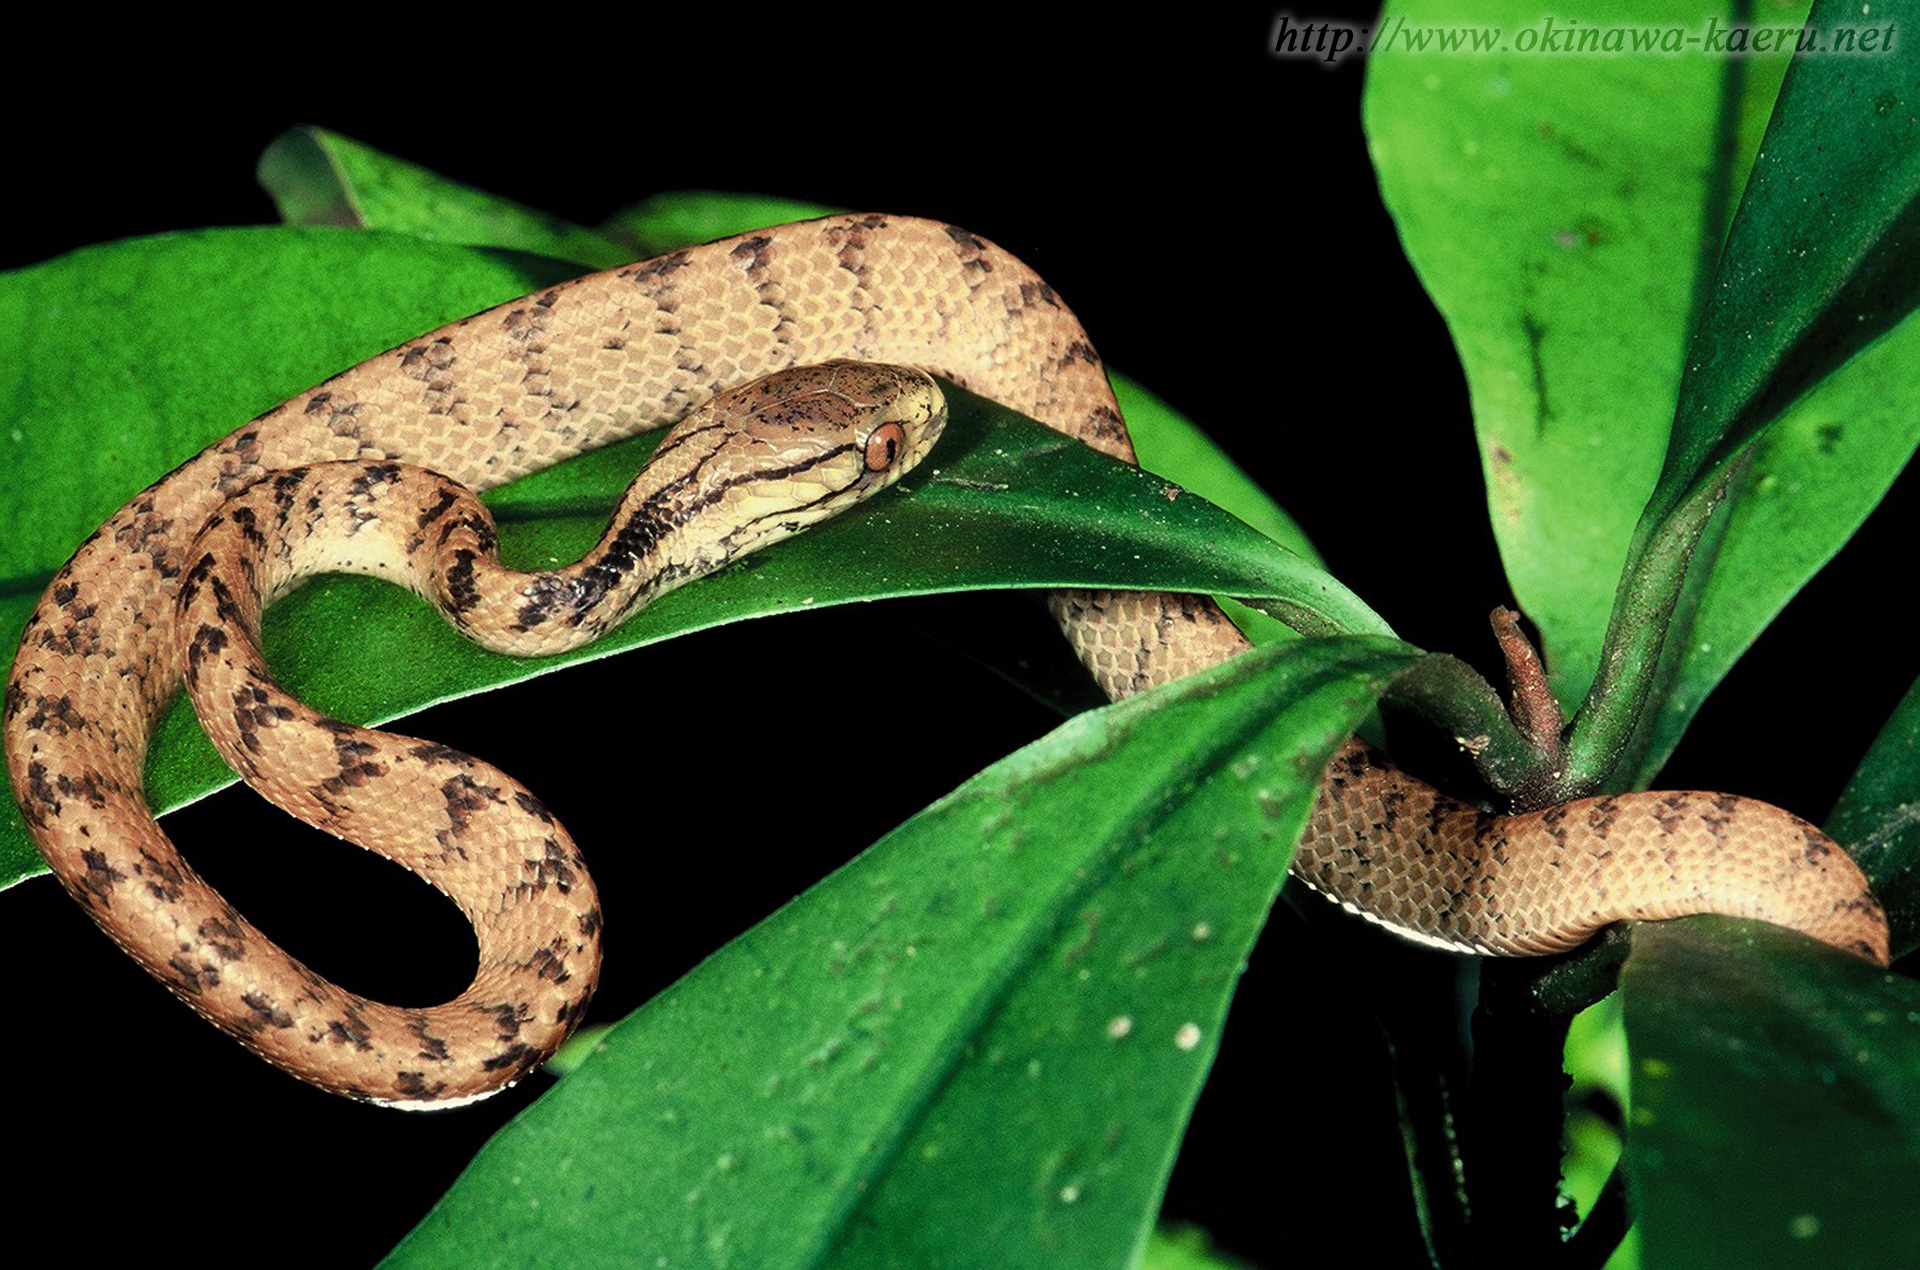 イワサキセダカヘビの画像